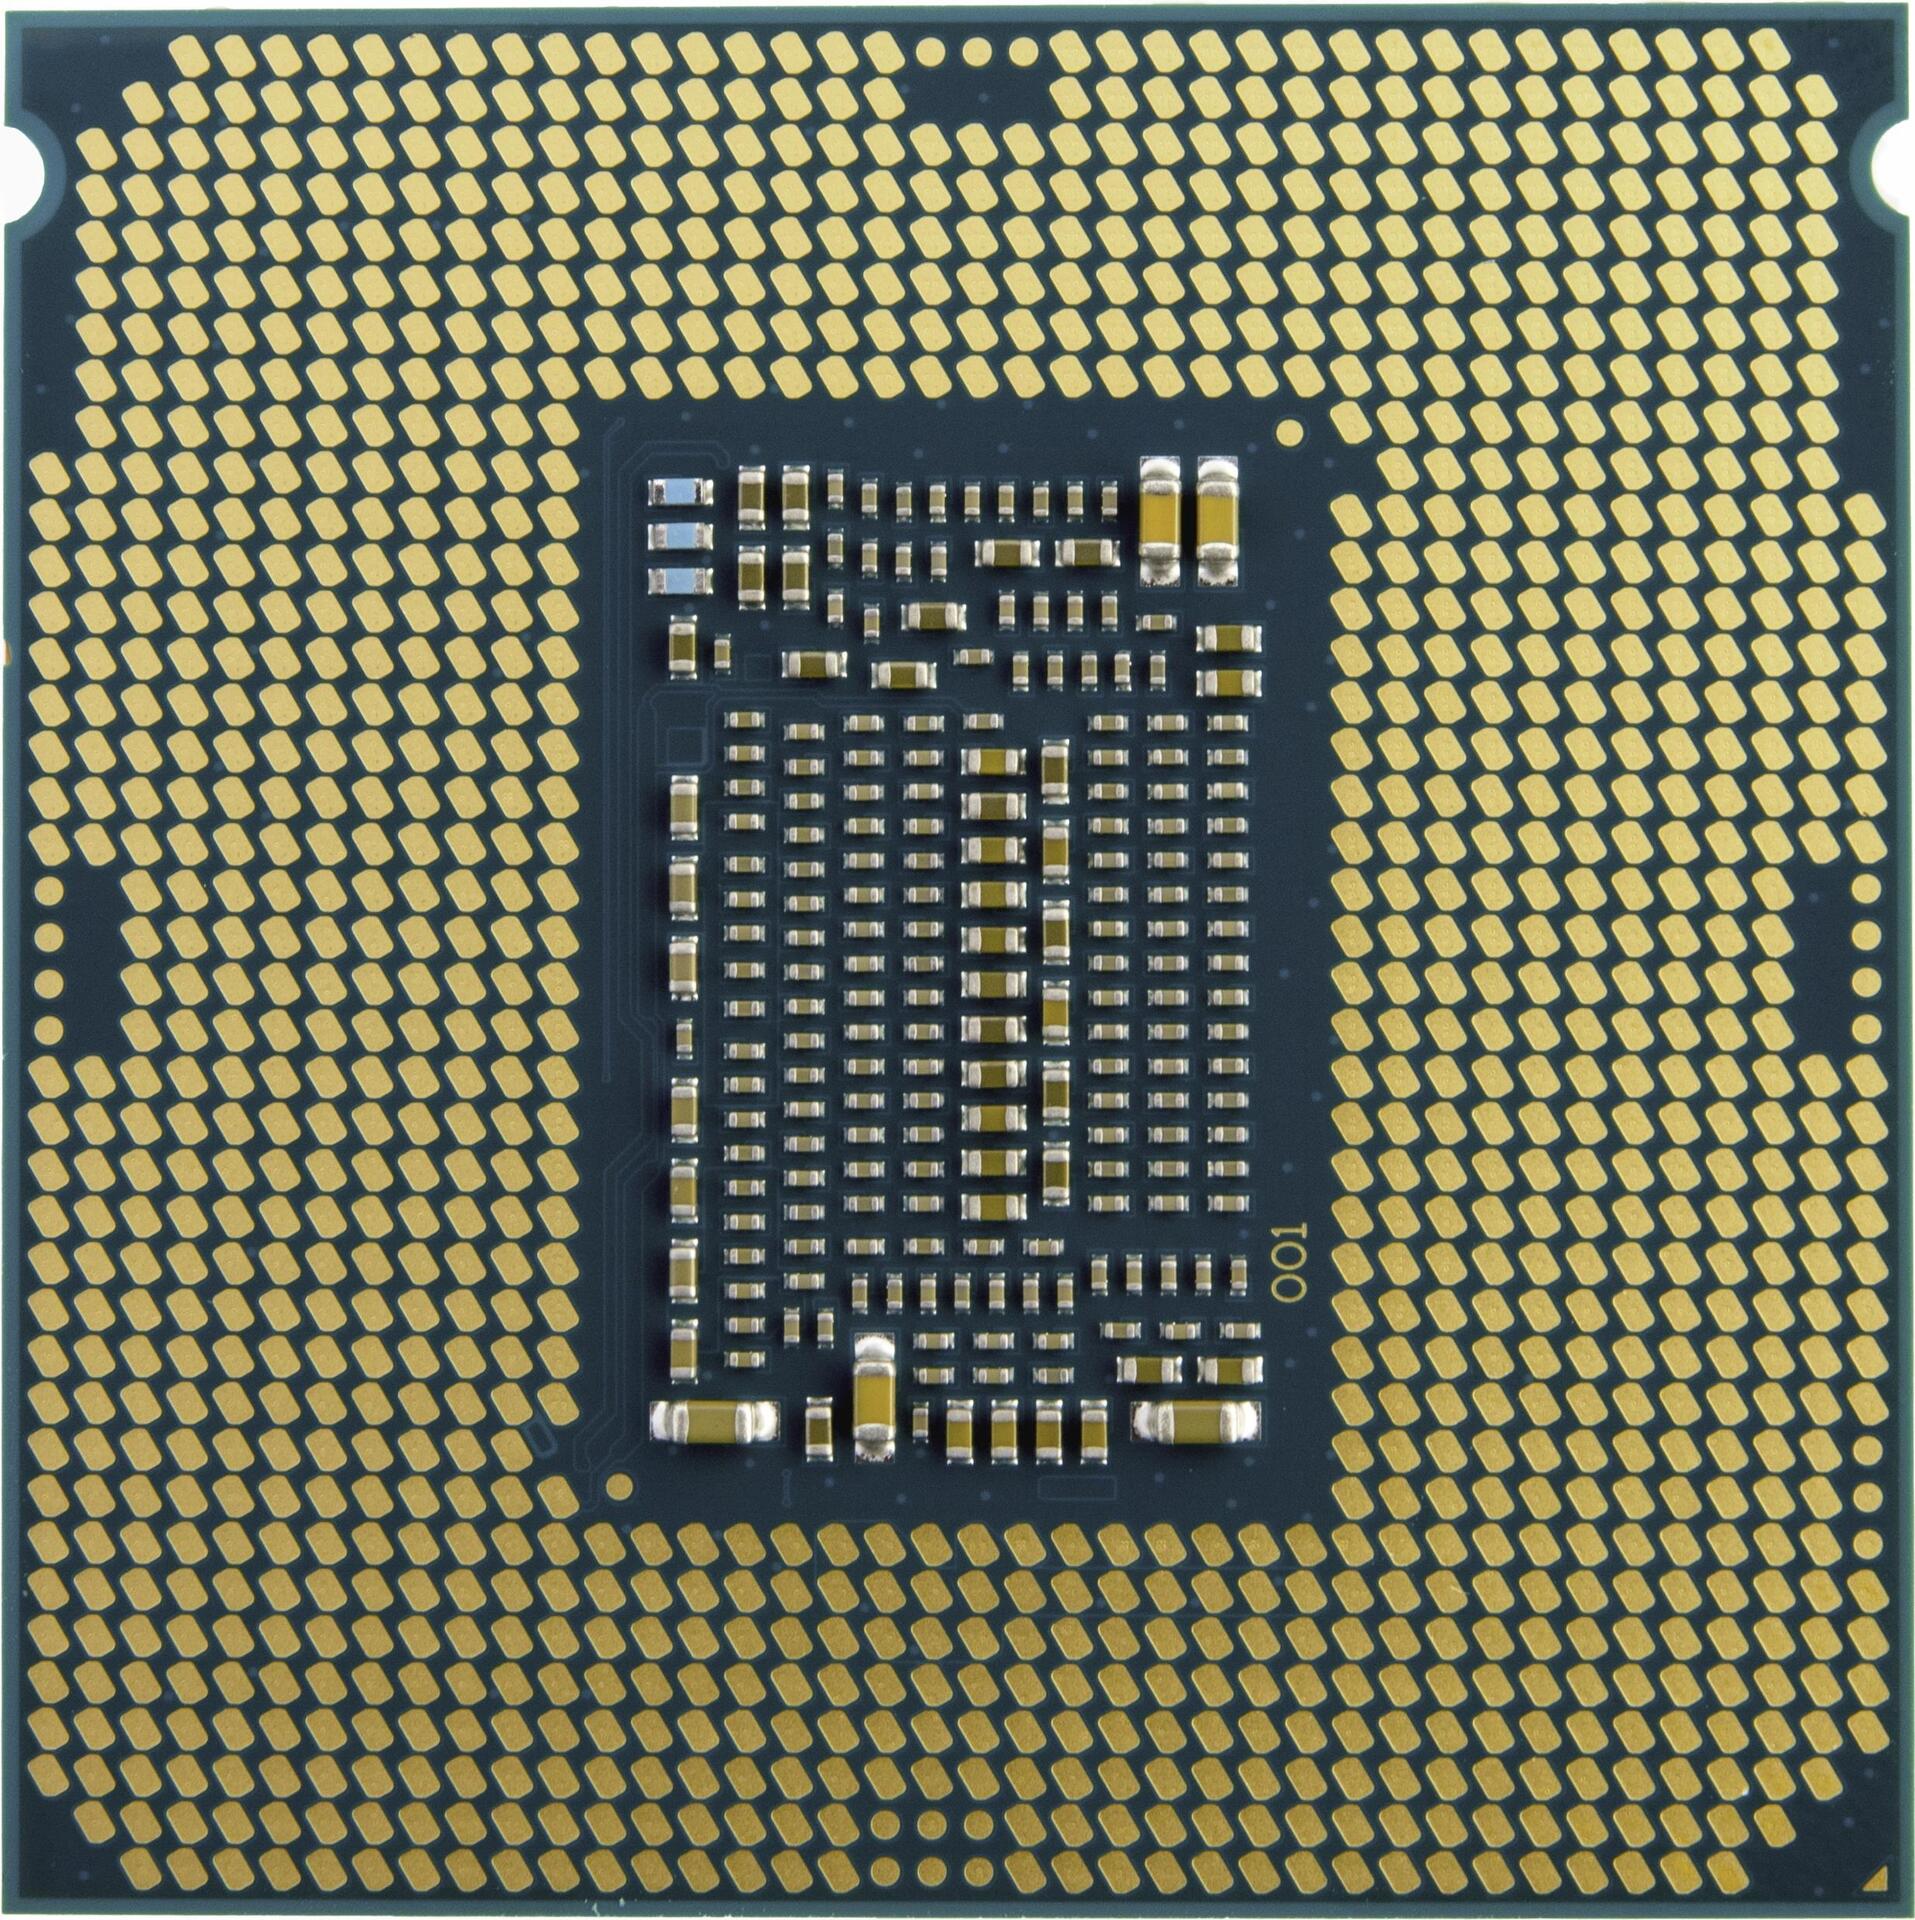 FUJITSU Intel Xeon Silver 4314 16C 2.40 GHz